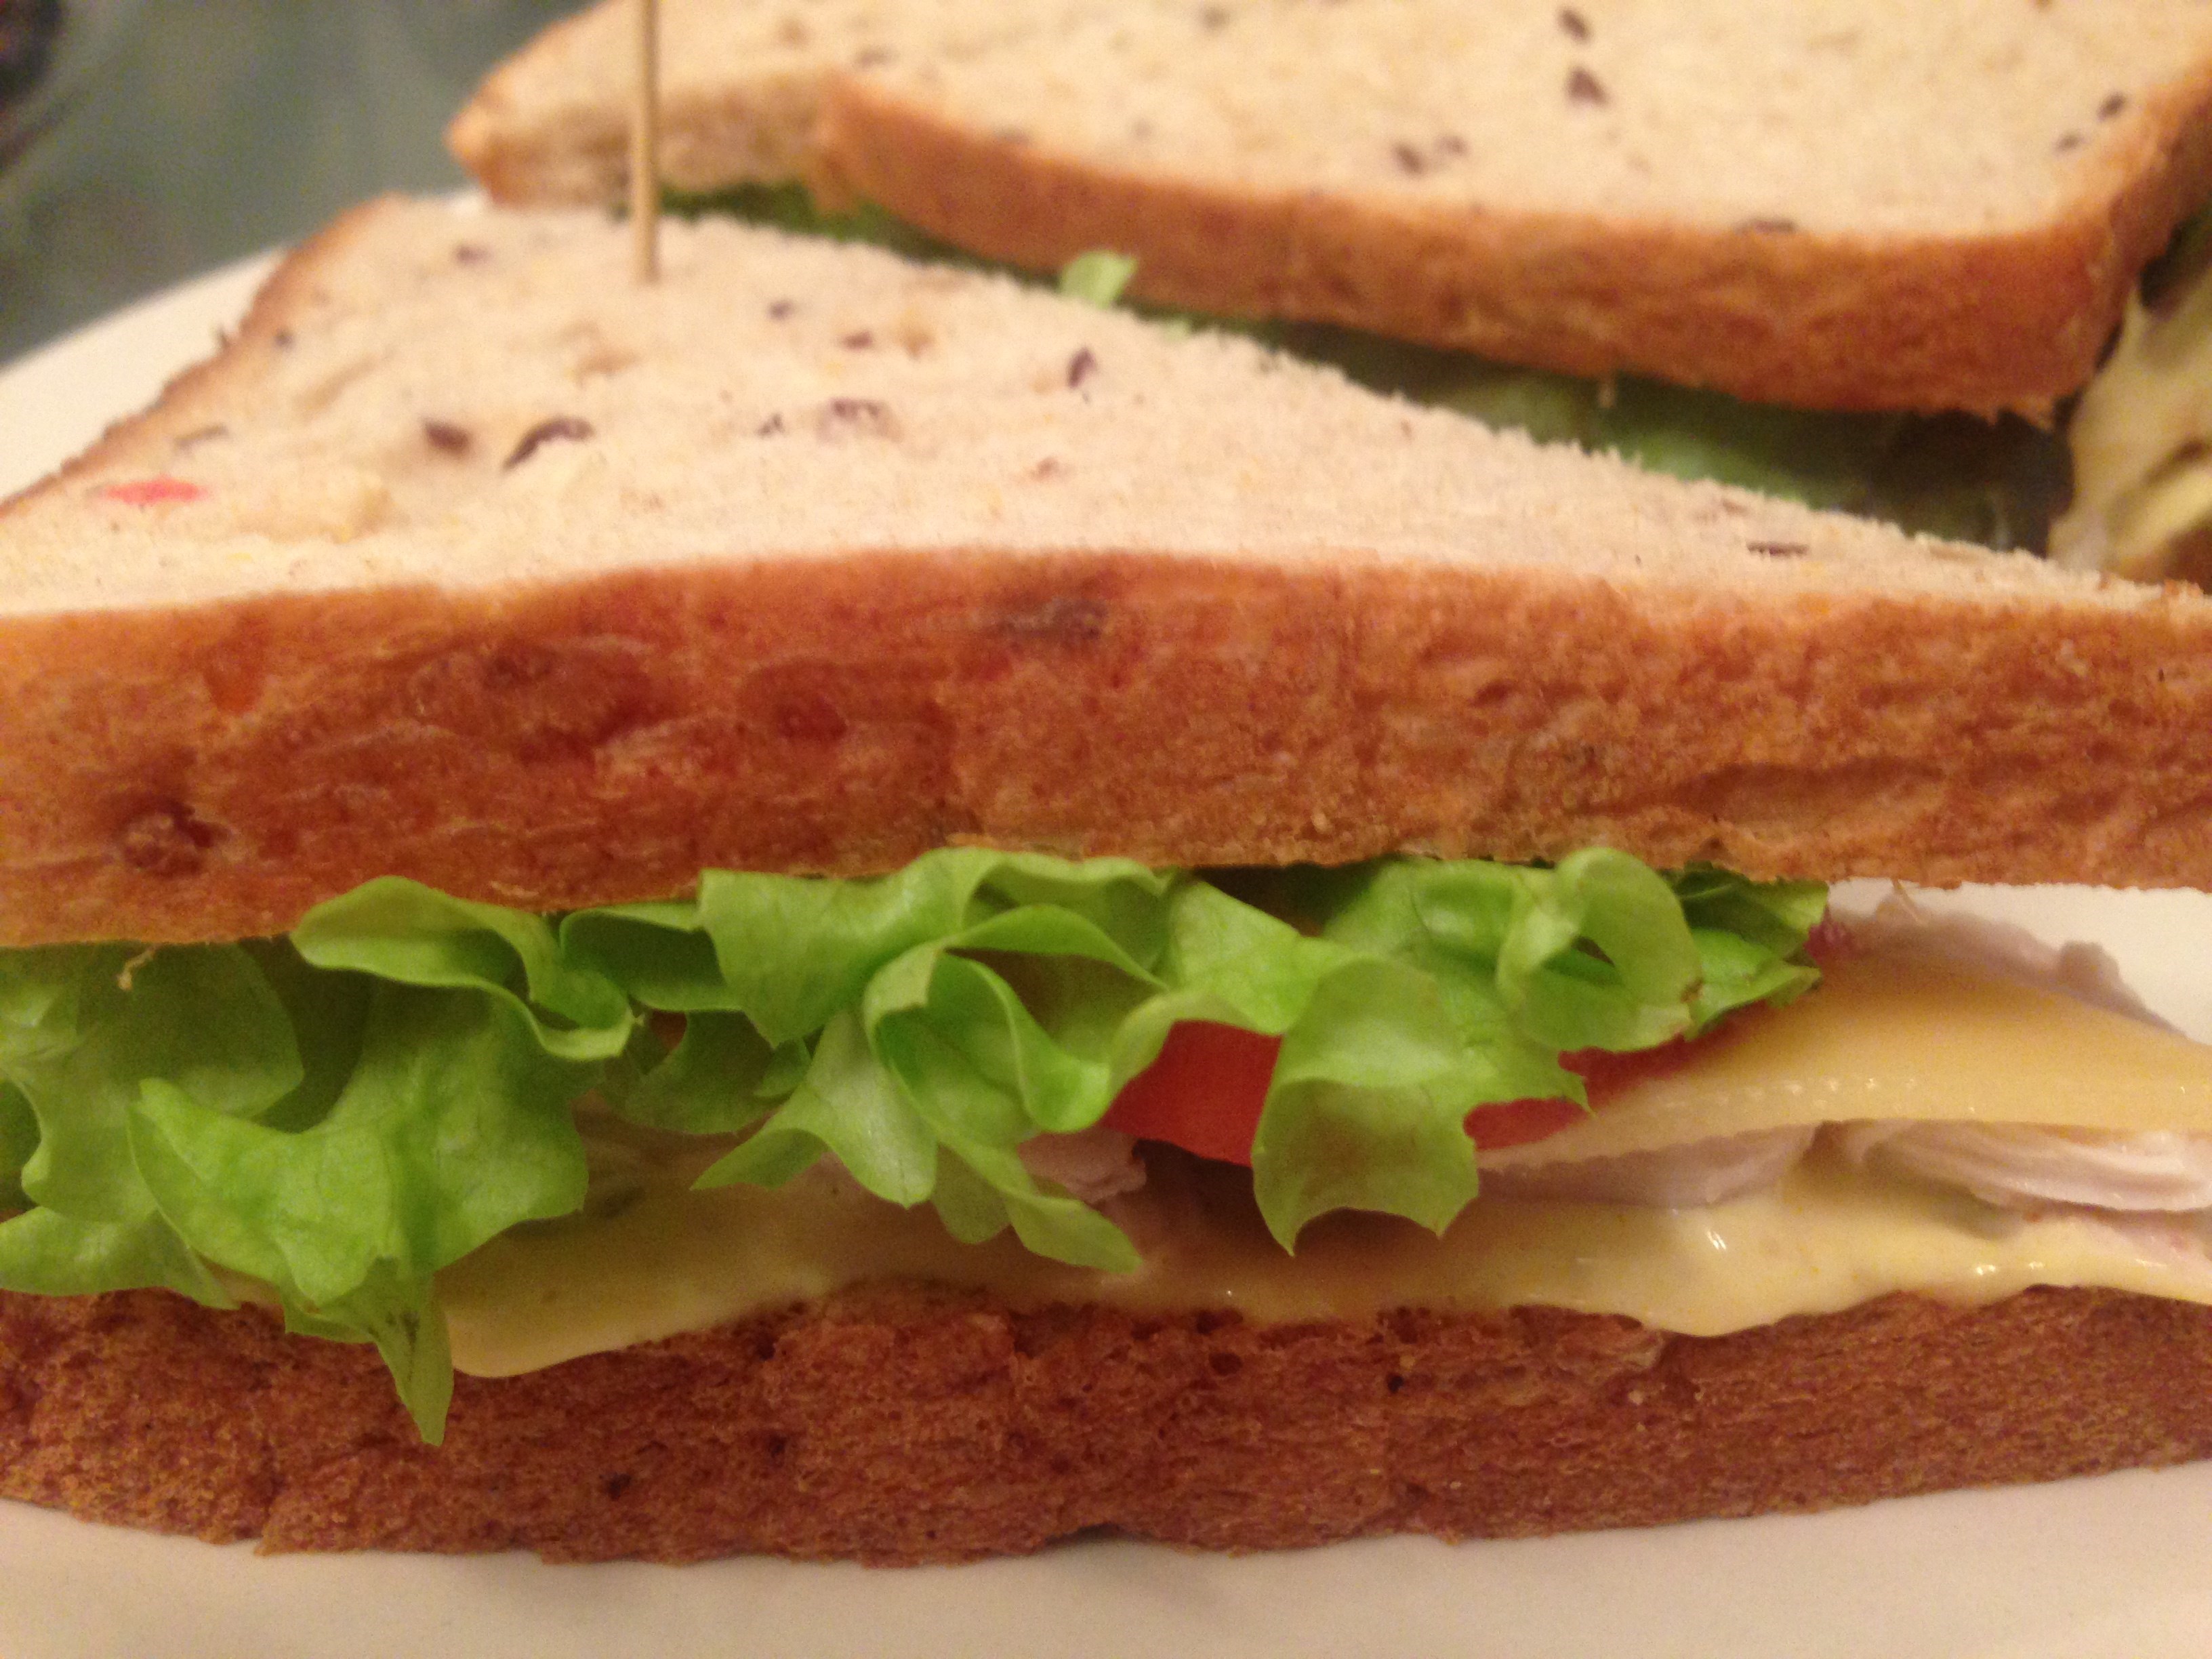 Холодный закрытый бутерброд фото